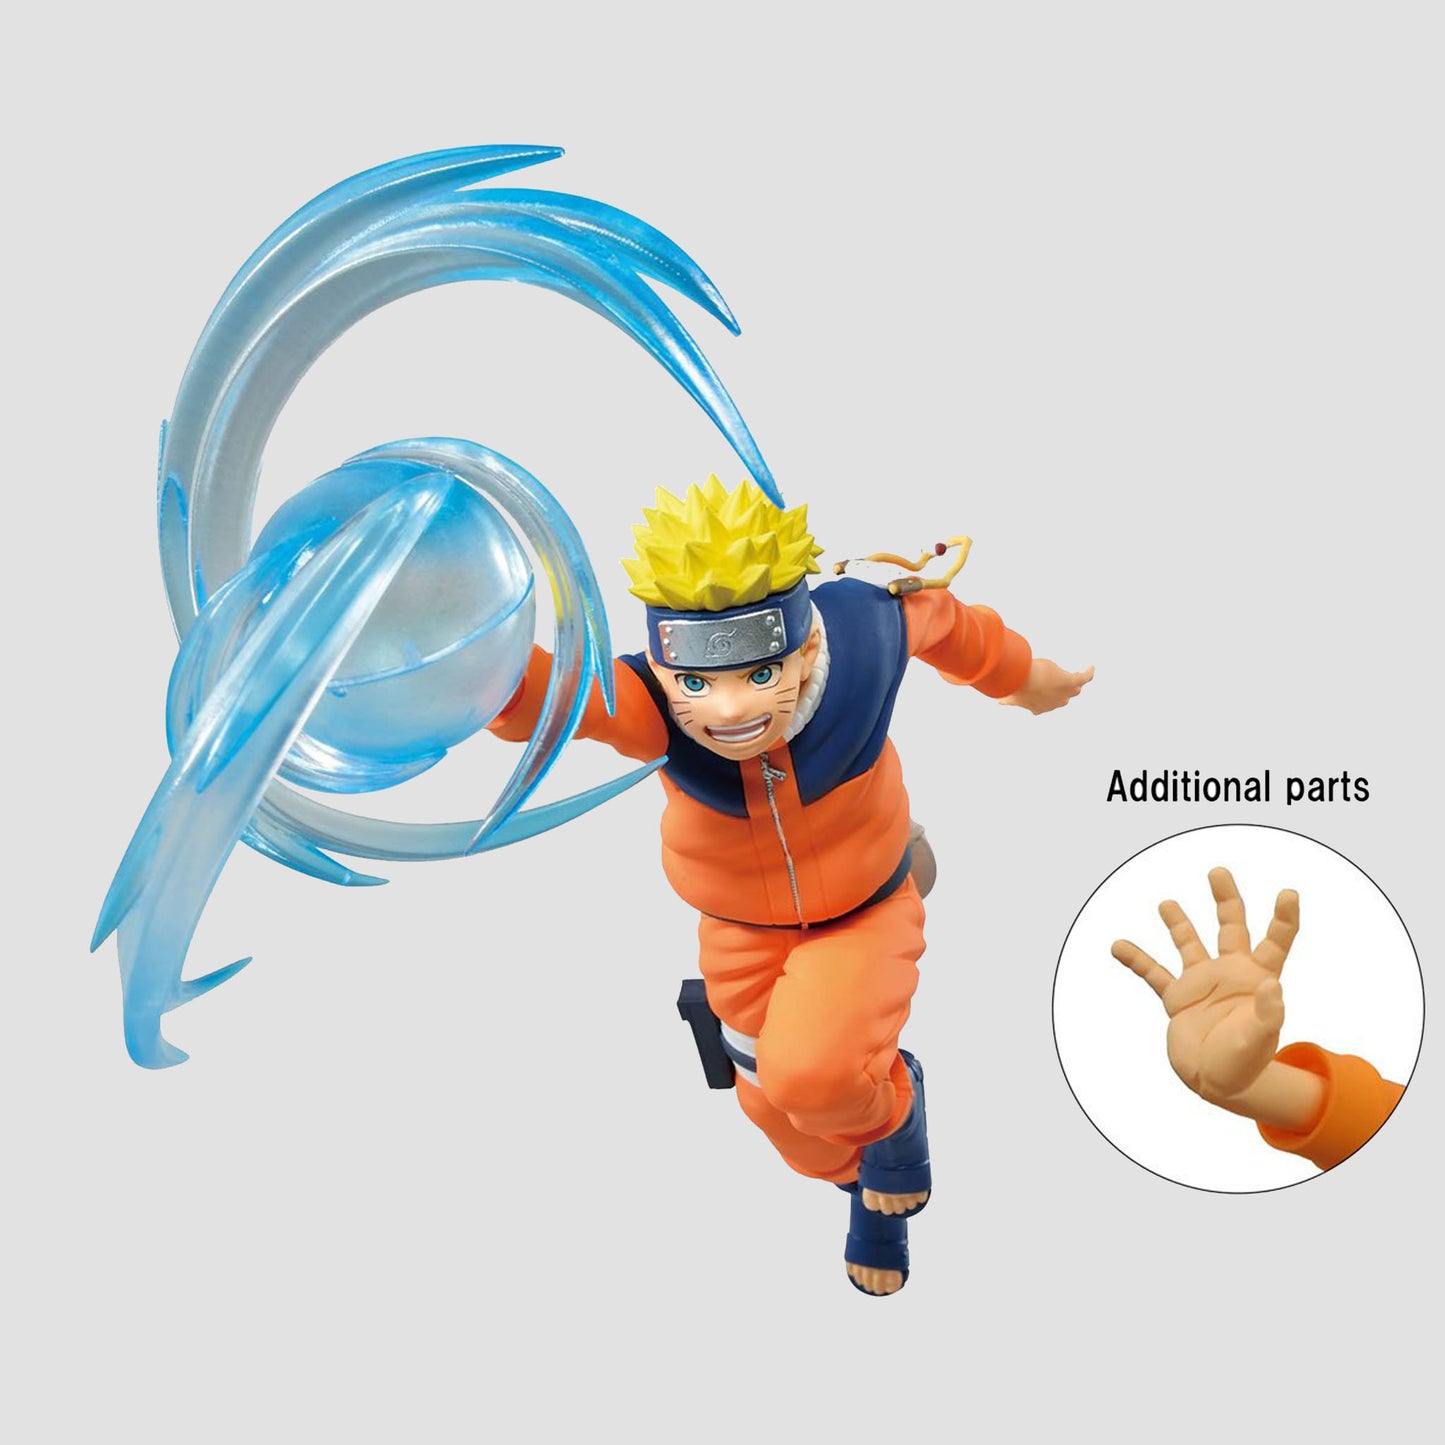 Load image into Gallery viewer, Naruto Uzumaki (Naruto Shippuden) Effectreme Ver. 1 Statue
